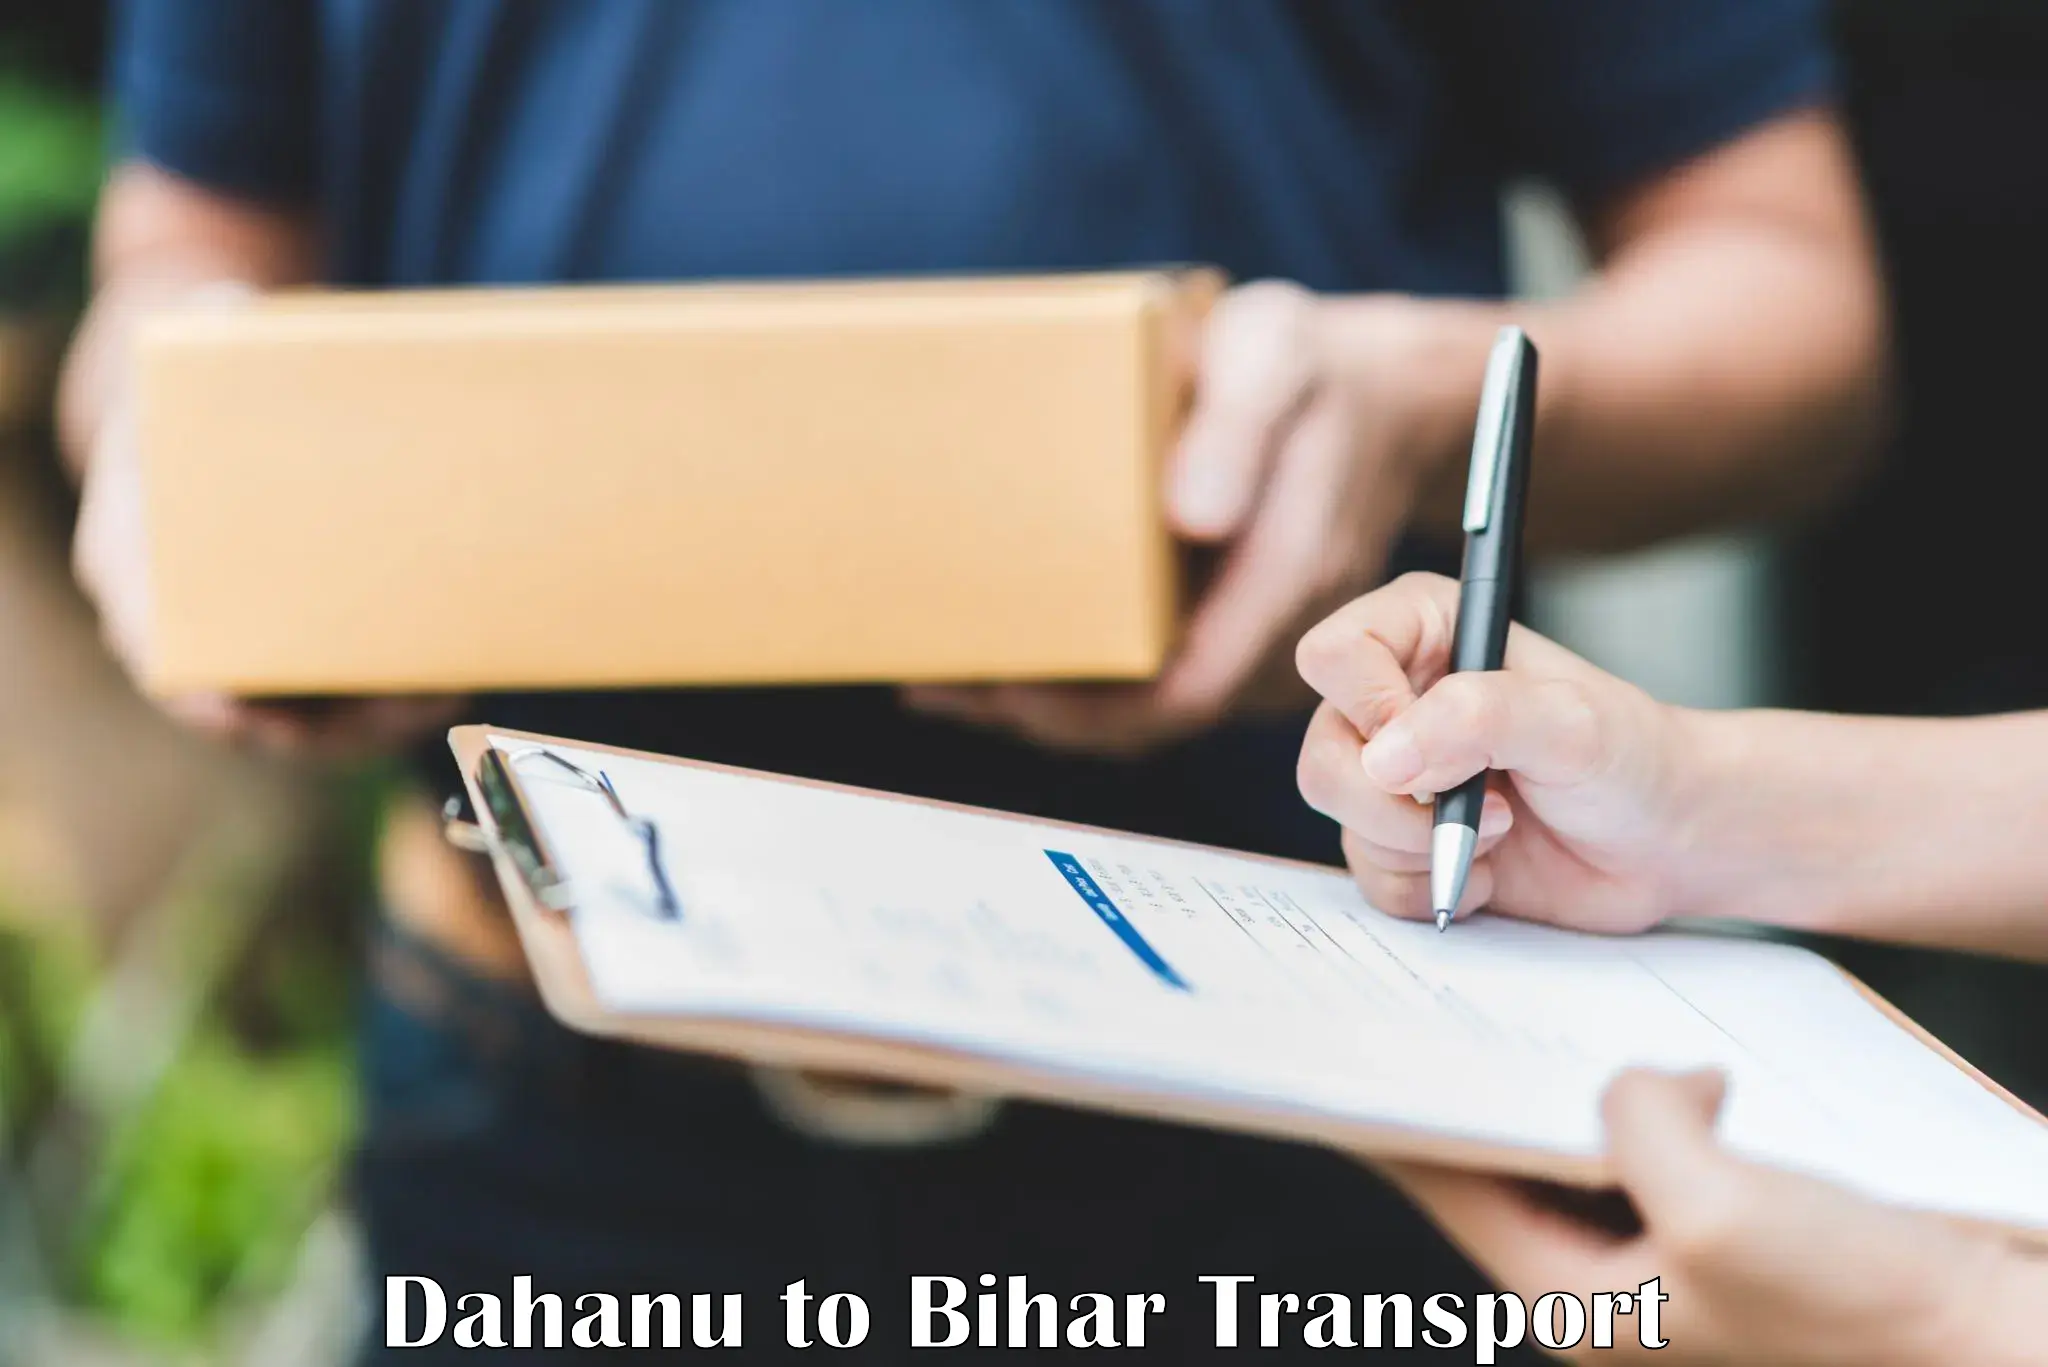 Transport shared services Dahanu to Bihar